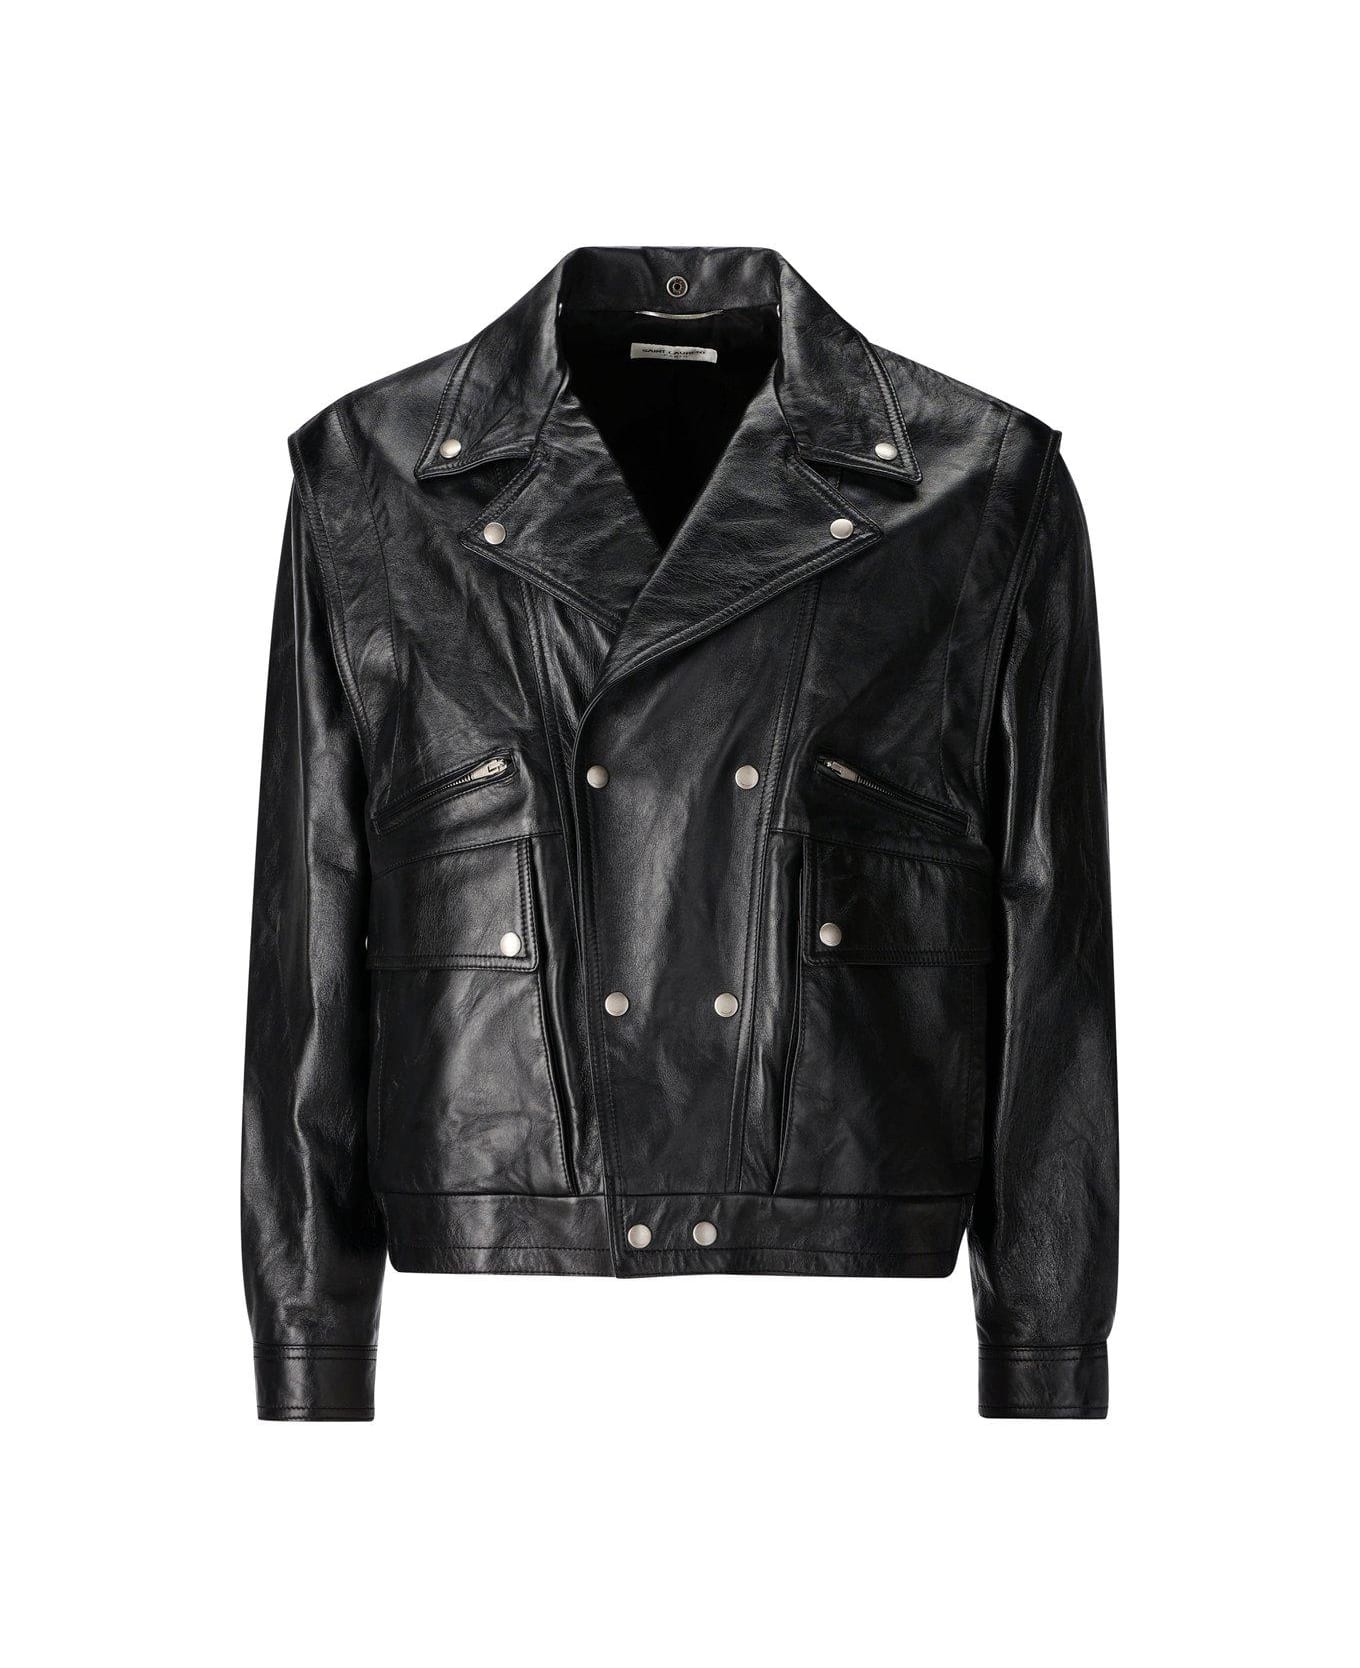 Saint Laurent Biker Leather Jacket